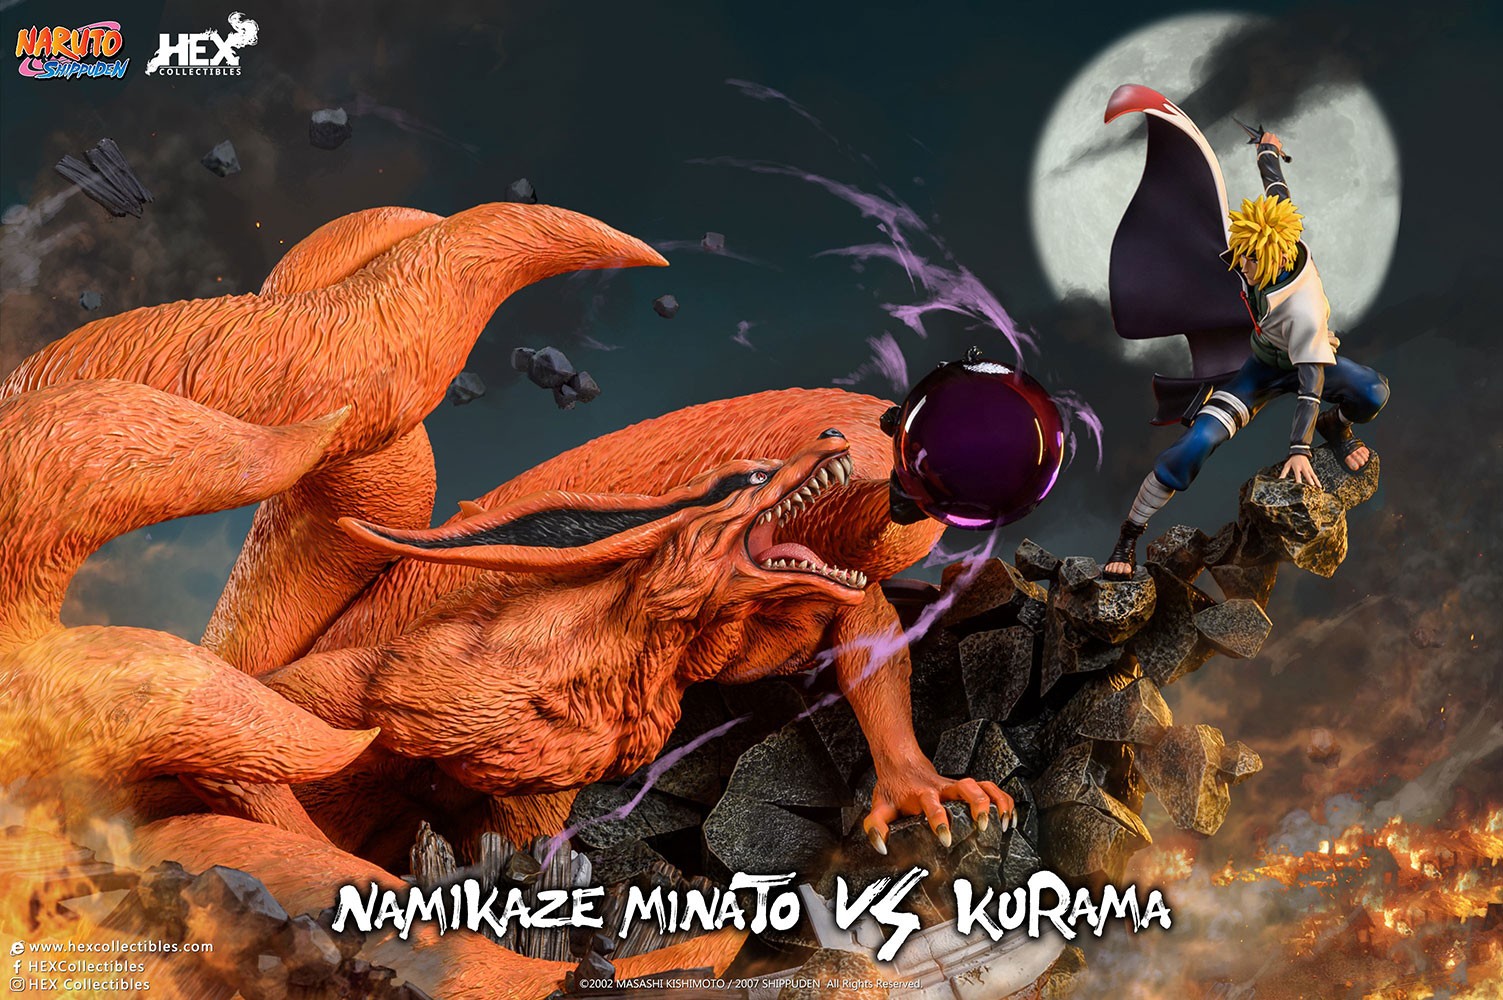 Namikaze Minato vs Kurama (Prototype Shown) View 1